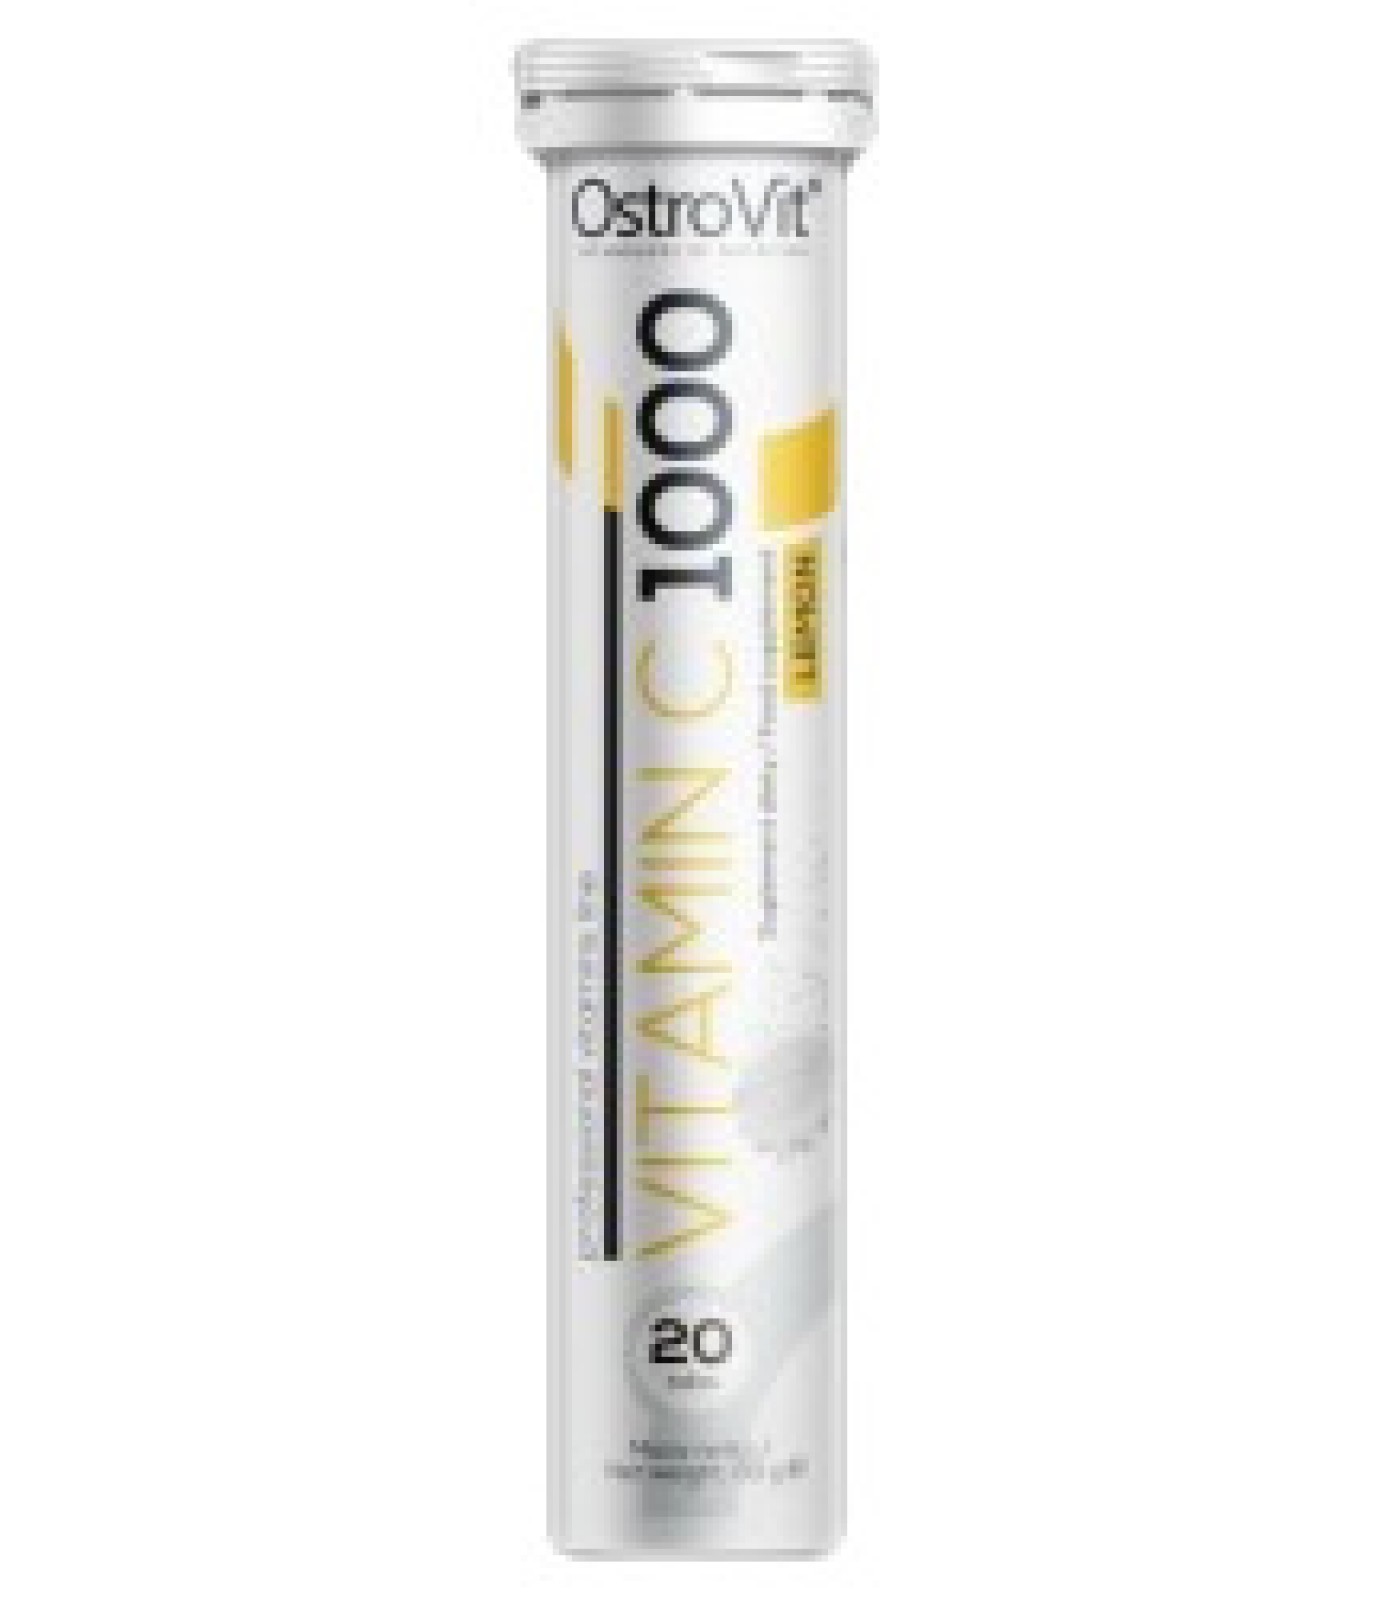 OstroVit - Vitamin C 1000 mg / Effervescent / 20tabs.